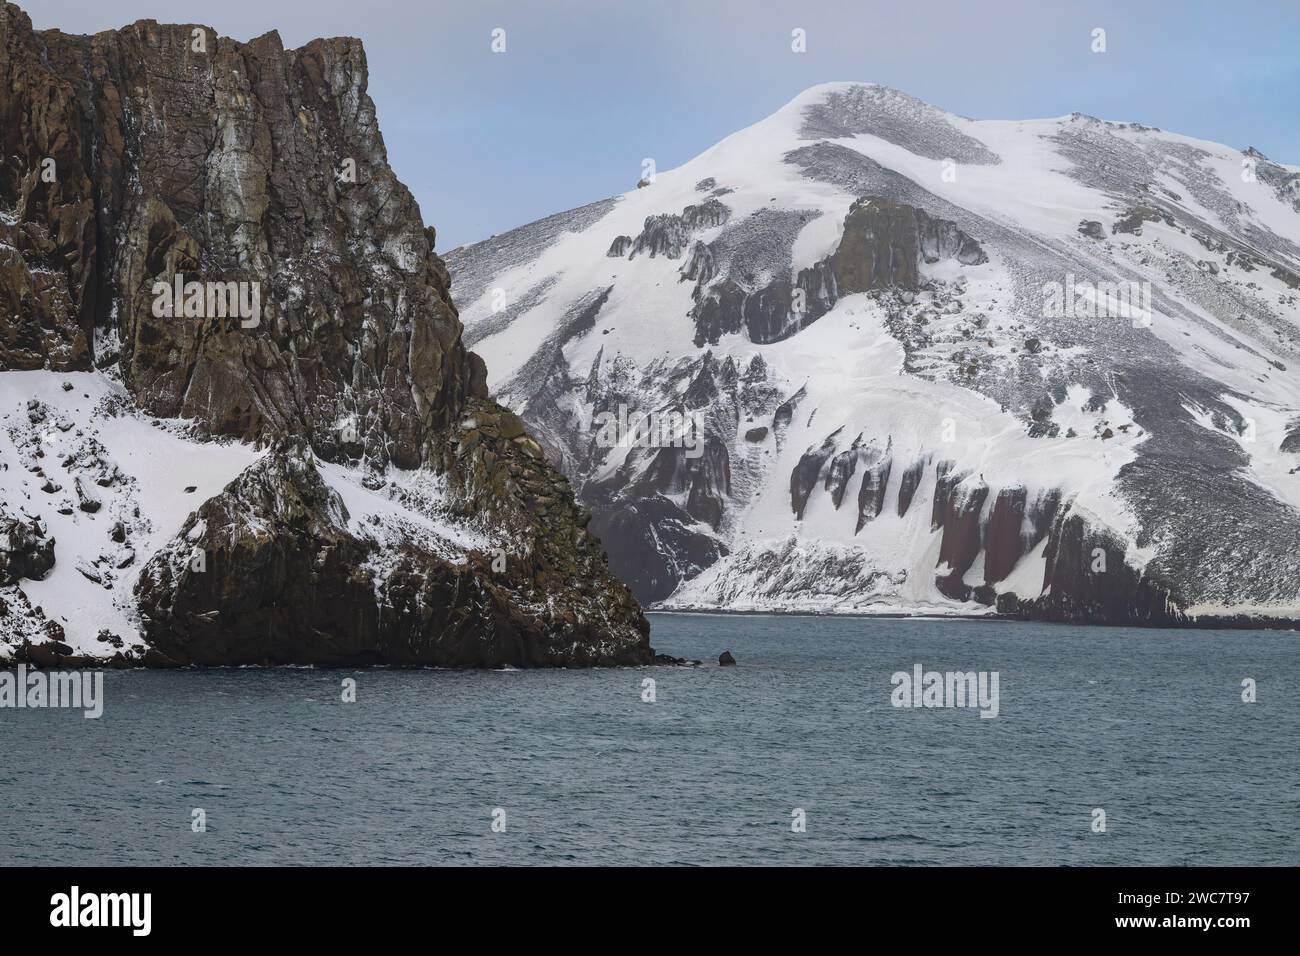 Isla de decepción, Islas Shetland del Sur, puerto natural seguro, en la caldera de un volcán activo, ruinas de una estación ballenera, paso estrecho Foto de stock